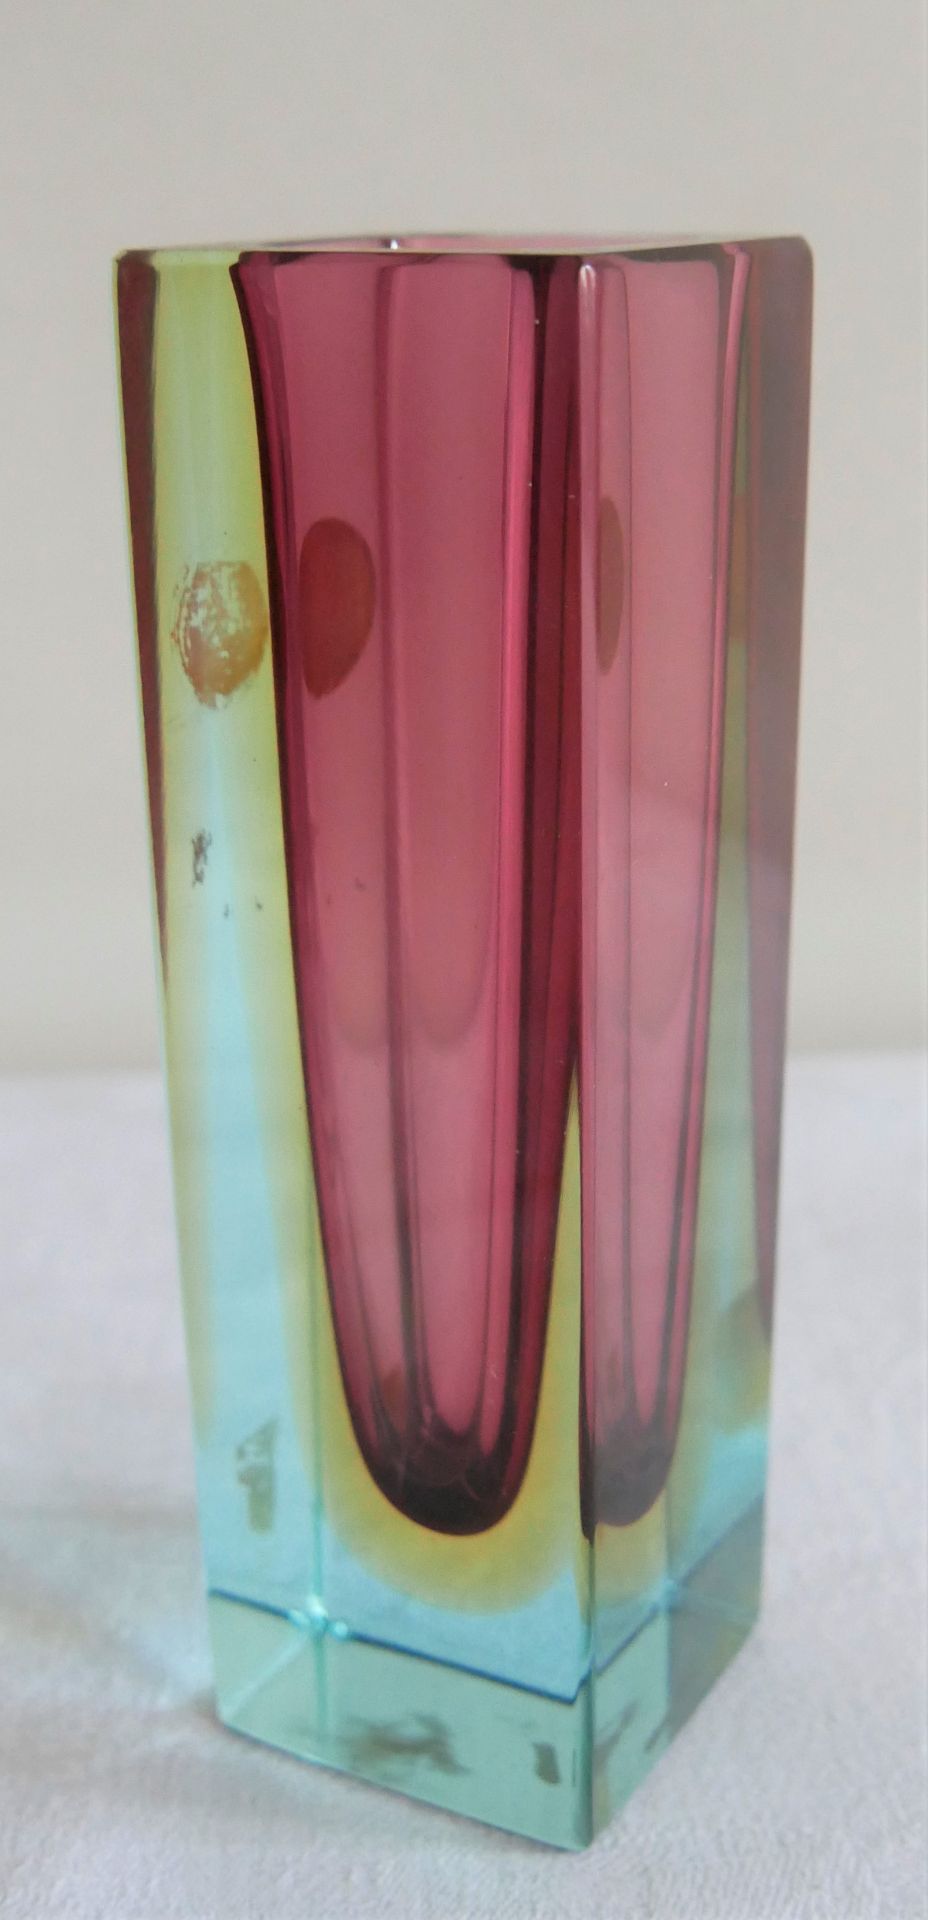 1 Murano Blockglas Vase, rosa Farbverlauf mit Aufkleber. Höhe ca. 14 cm. - Bild 2 aus 2